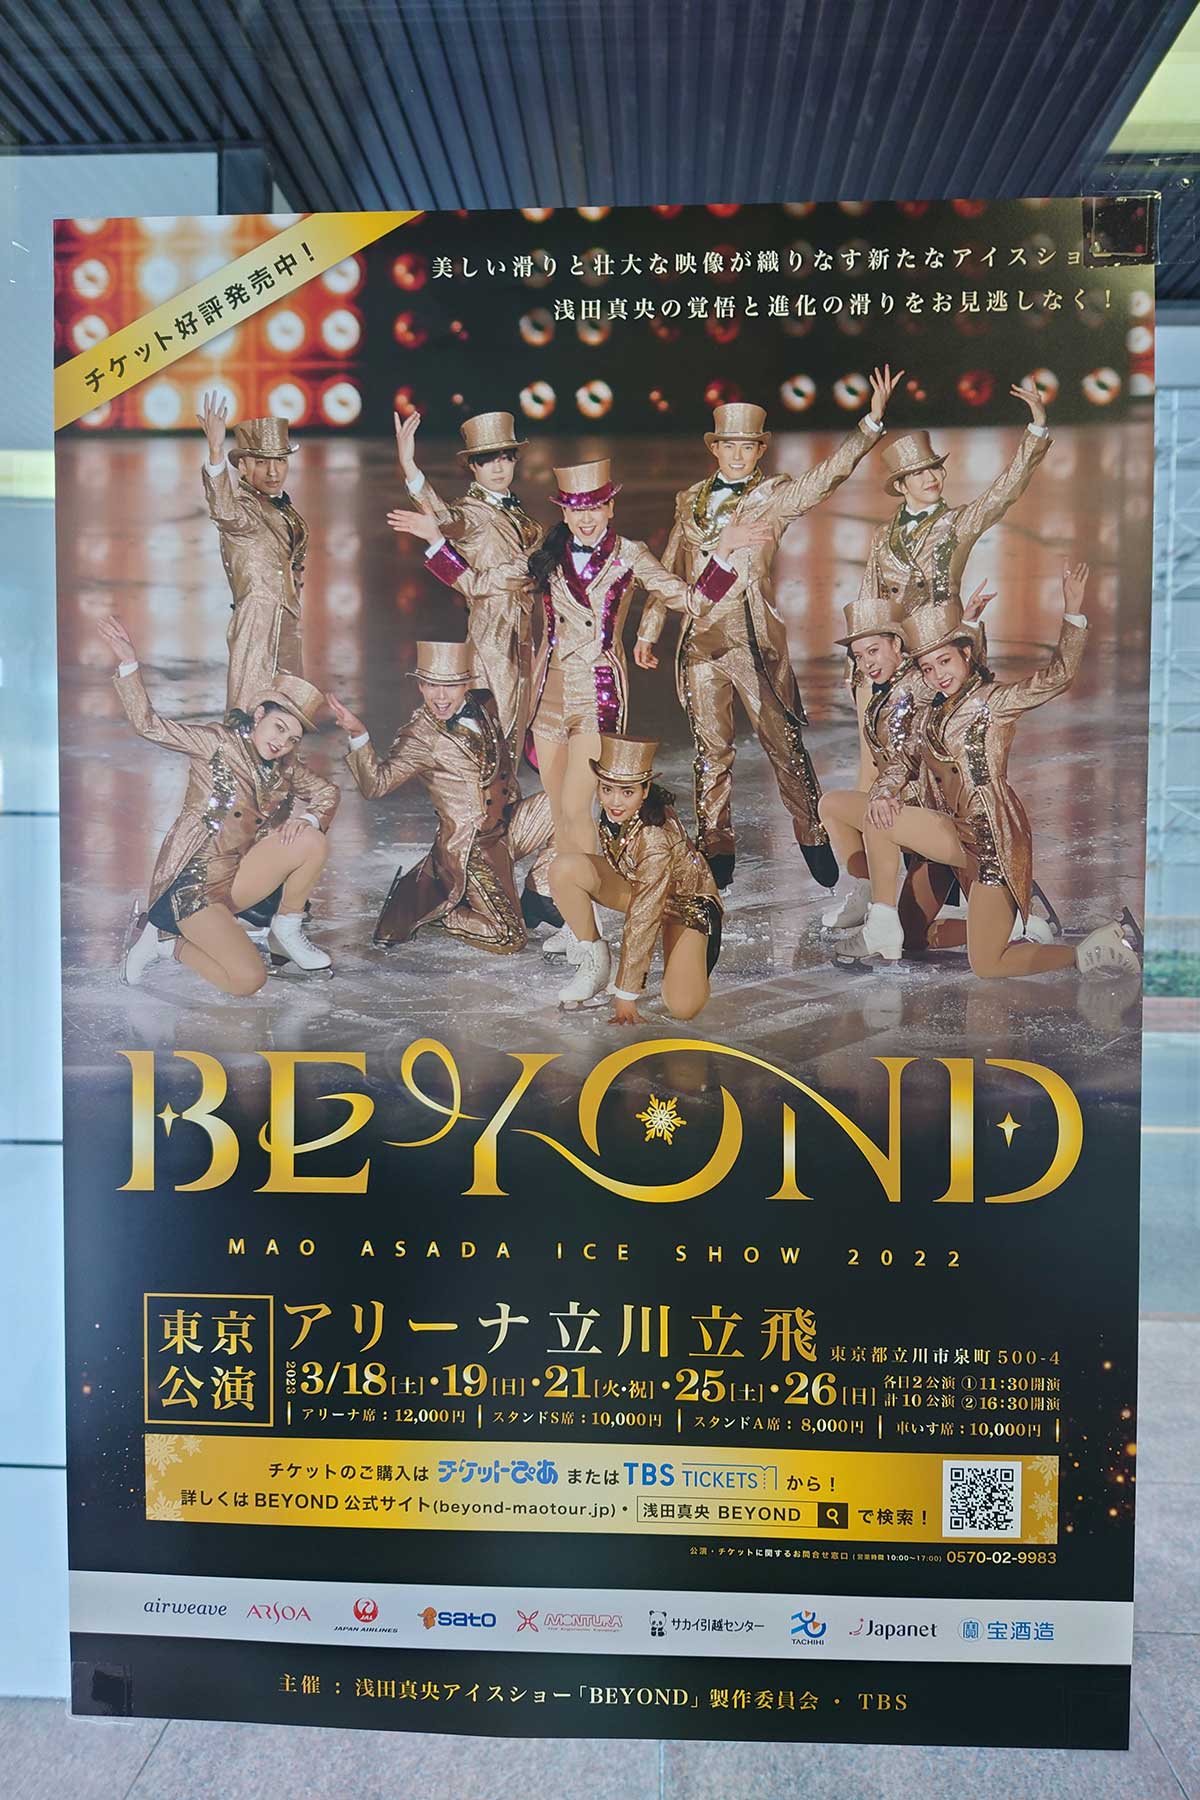 7/16浅田真央「BEYOND The Final」特別公演 apovelprime.com.br